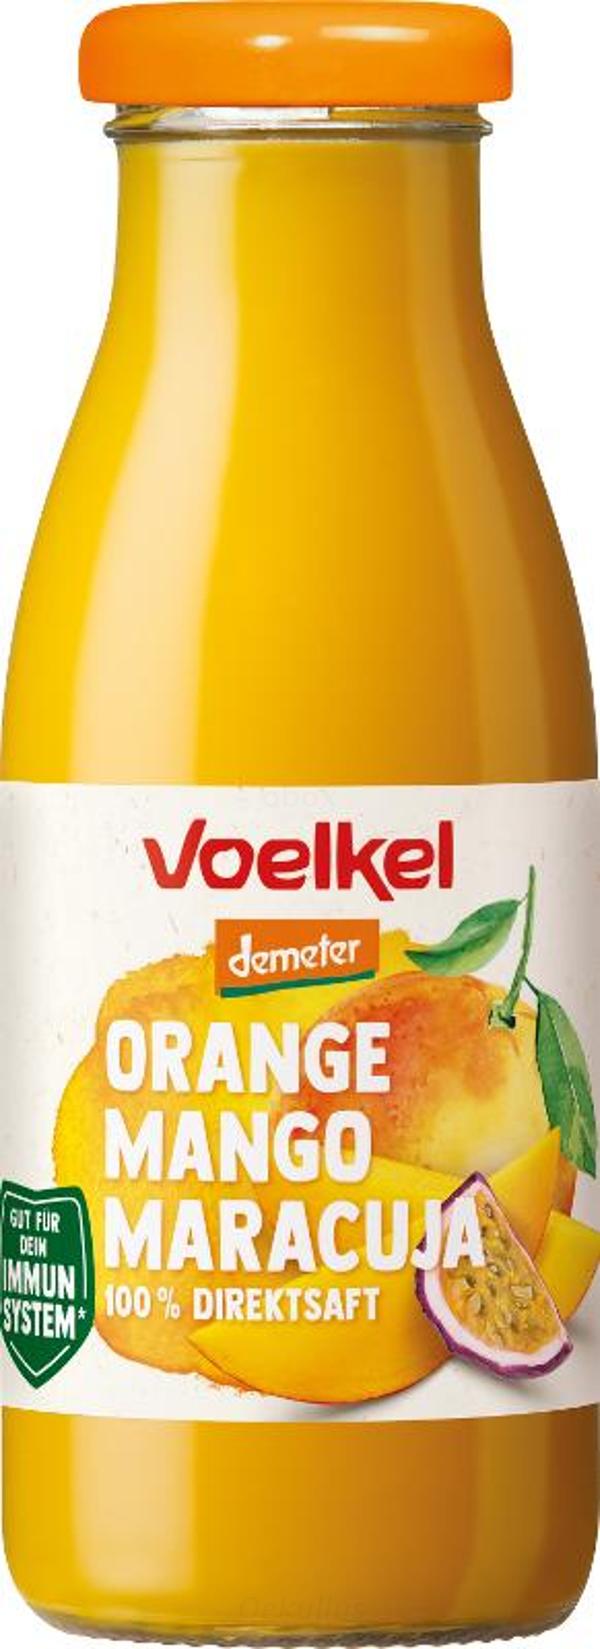 Produktfoto zu fair to go - Orange Mango Maracuja